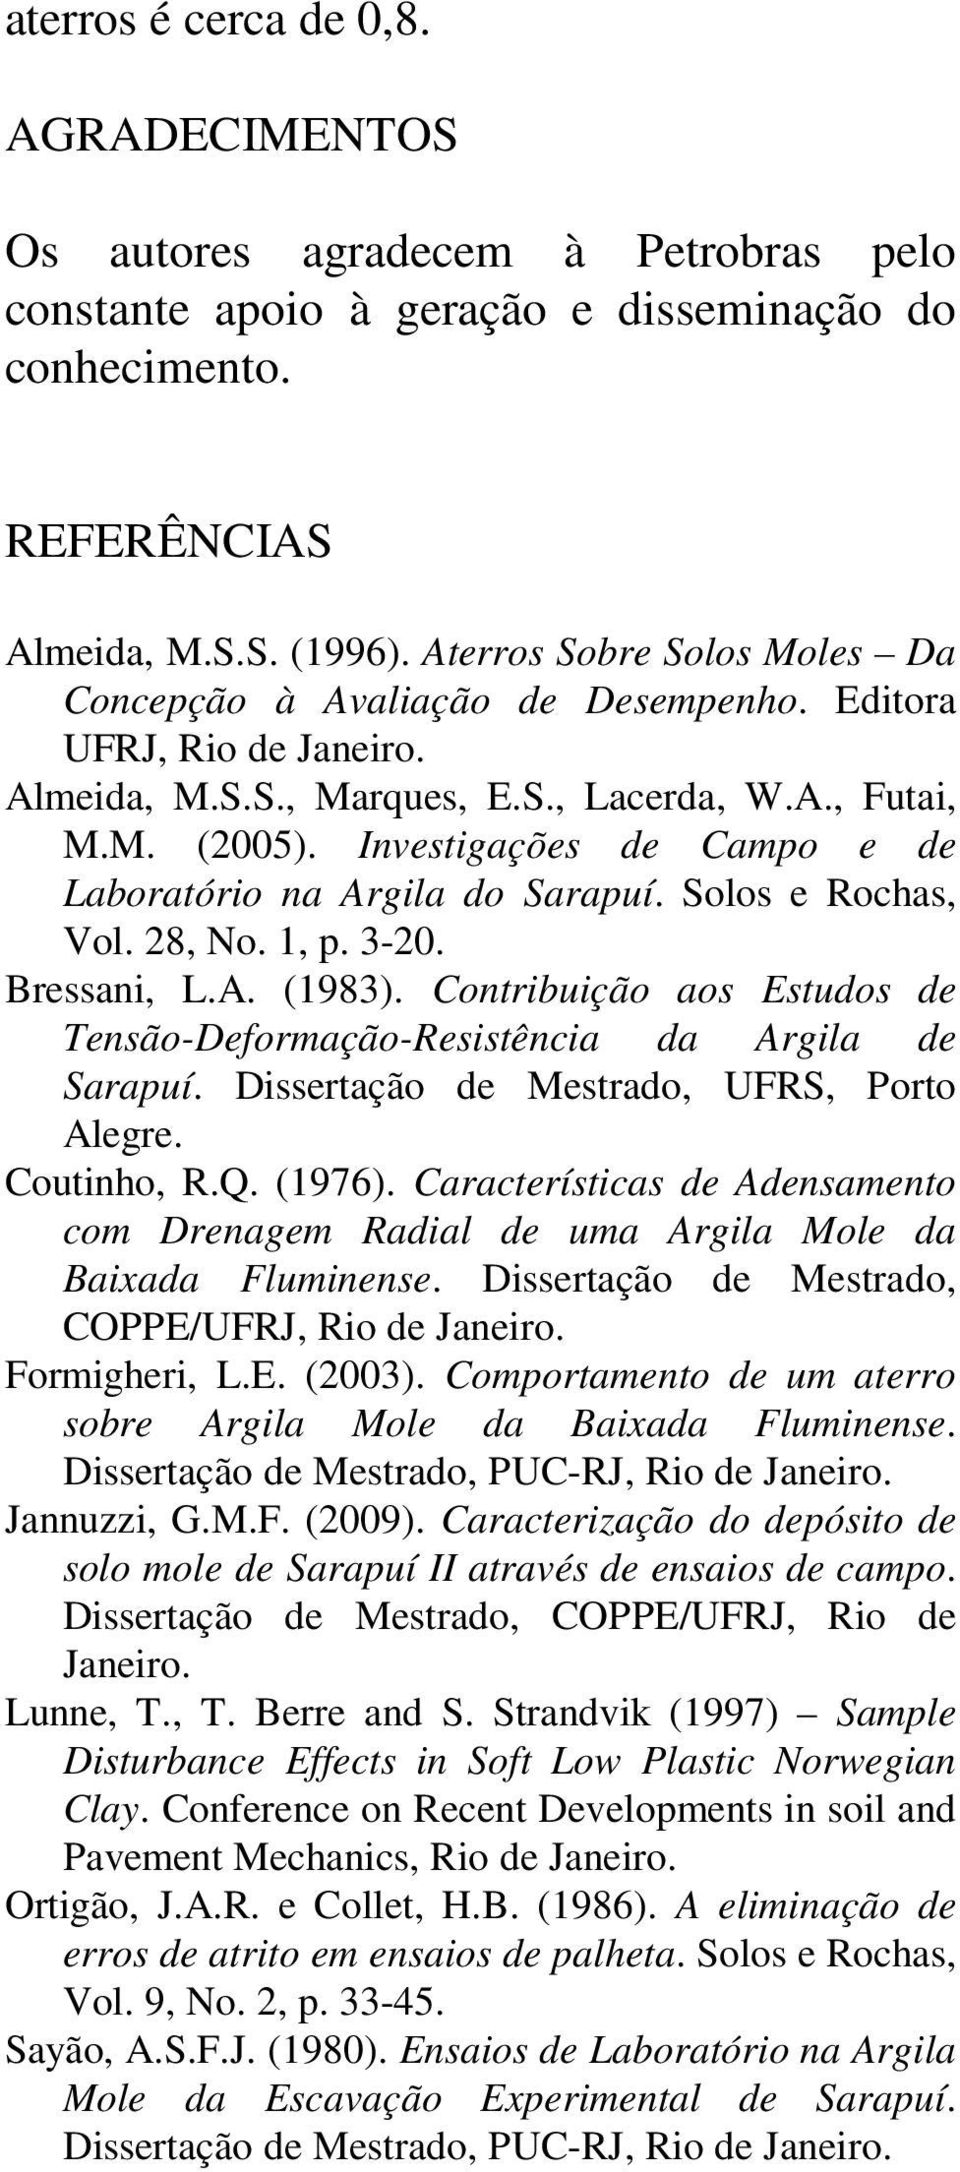 Investigações de Campo e de Laboratório na Argila do Sarapuí. Solos e Rochas, Vol. 28, No. 1, p. 3-20. Bressani, L.A. (1983).